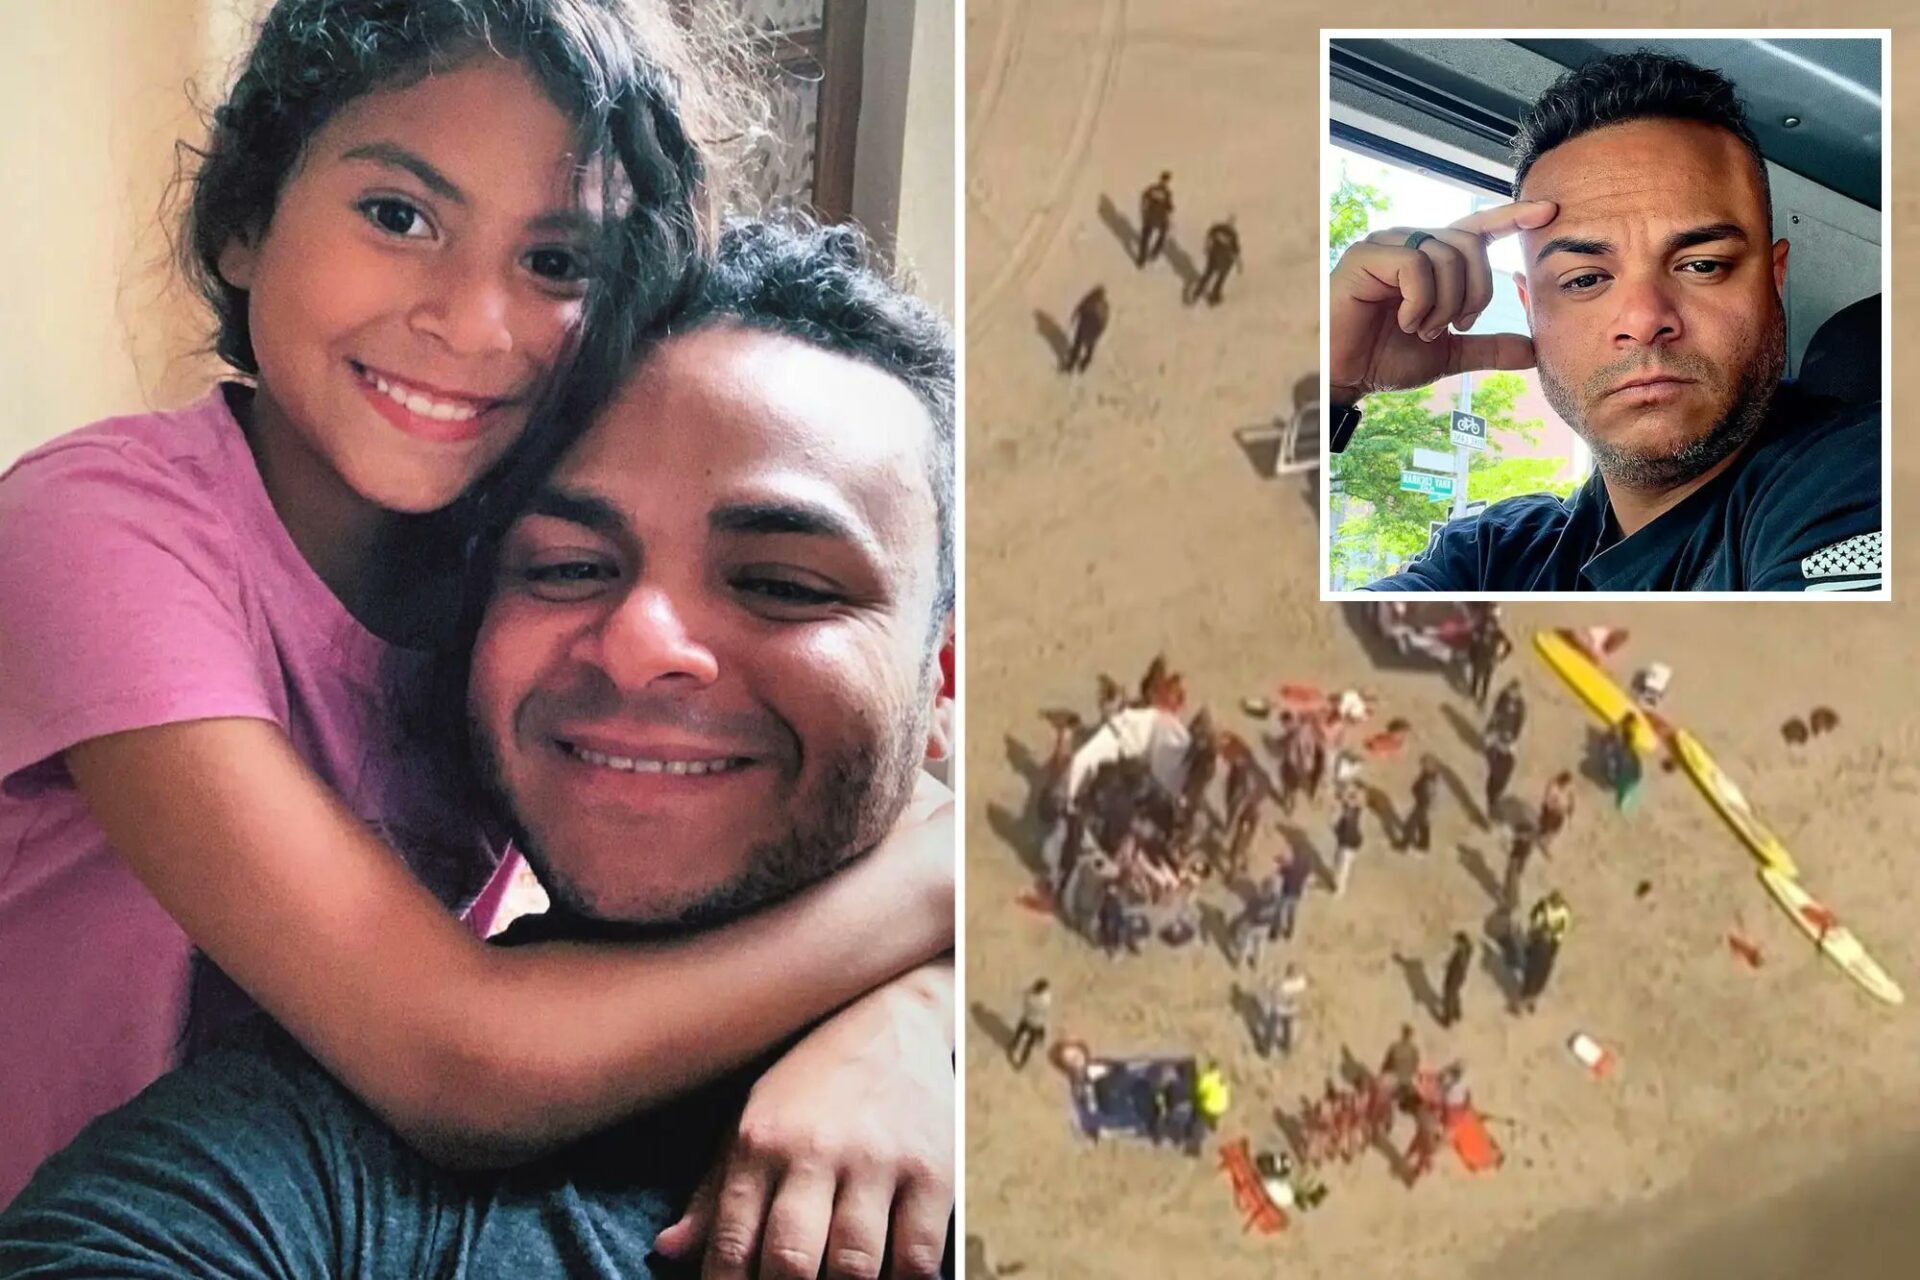 Bombero dominicano muere ahogado mientras intentaba salvar a su hija